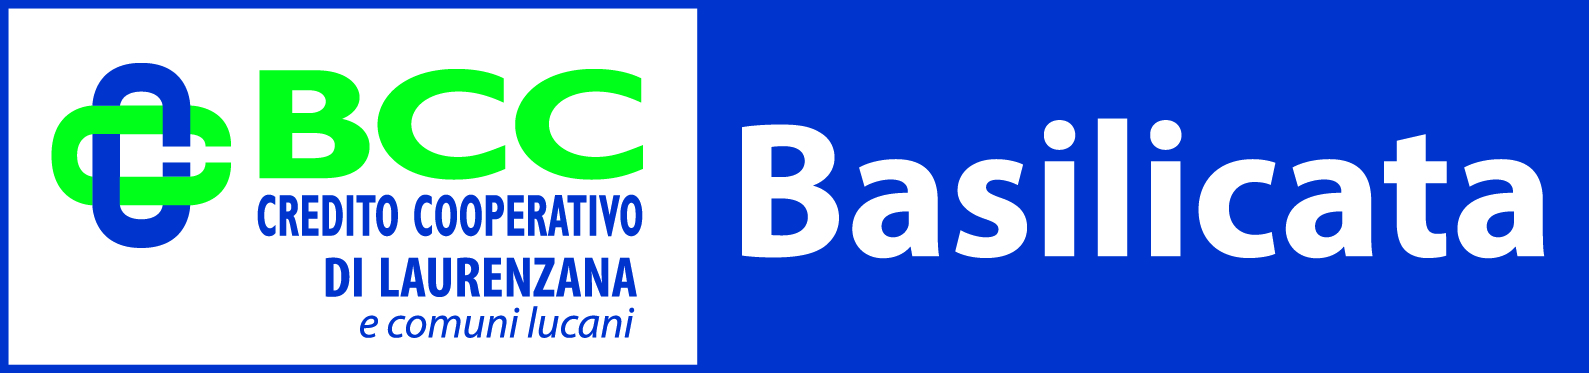 logo bcc basilicata 2